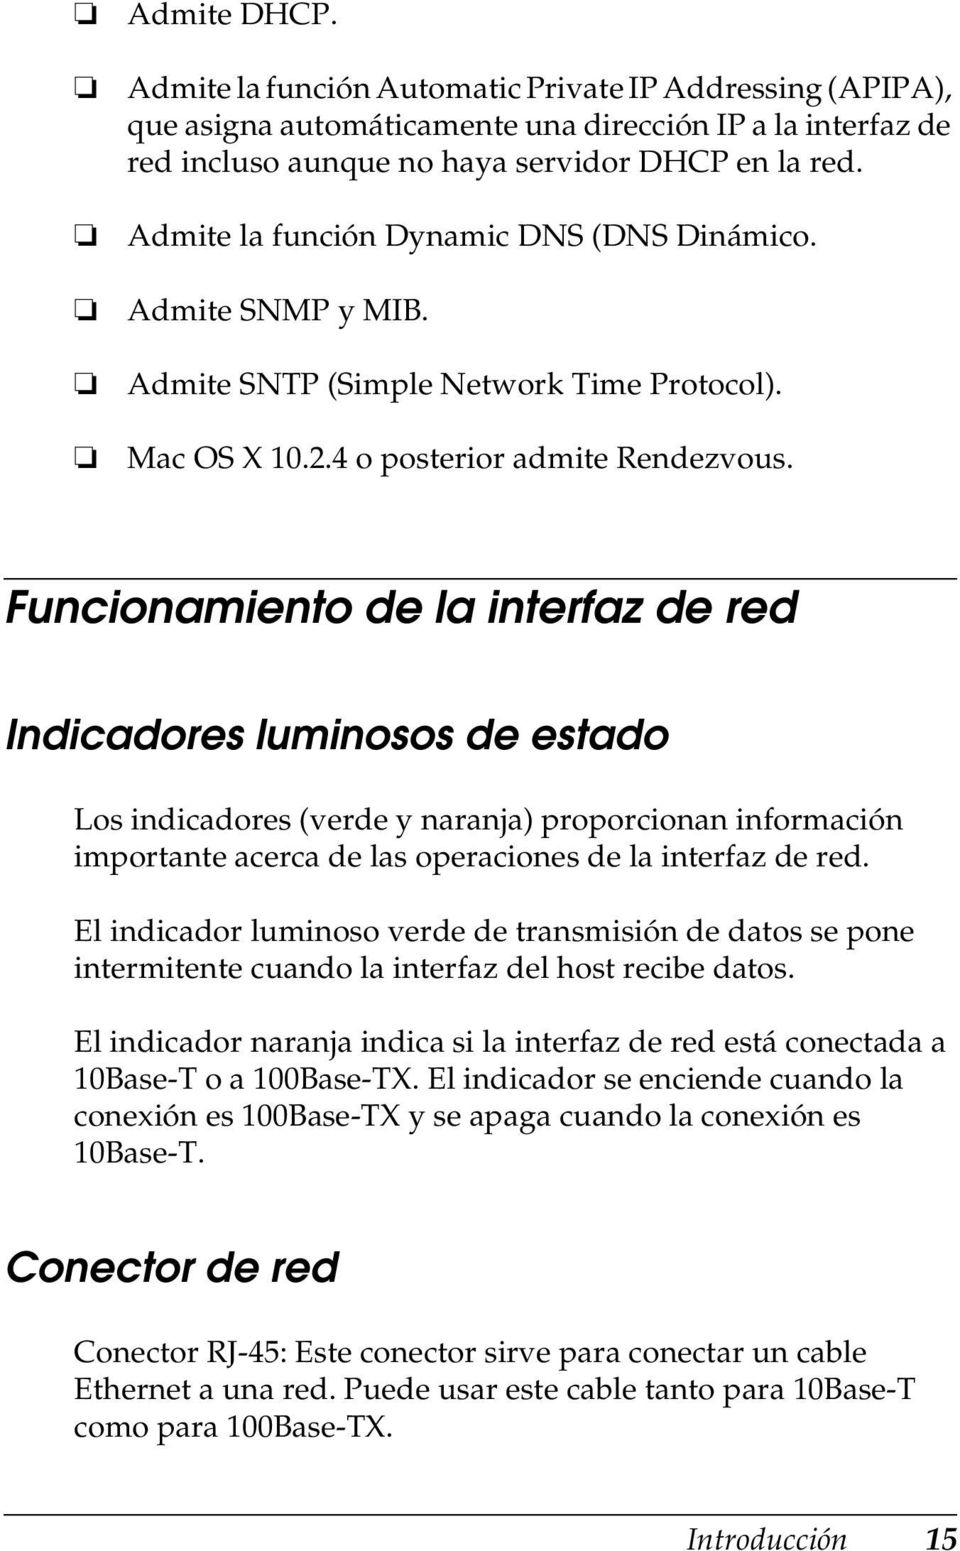 Funcionamiento de la interfaz de red Indicadores luminosos de estado Los indicadores (verde y naranja) proporcionan información importante acerca de las operaciones de la interfaz de red.